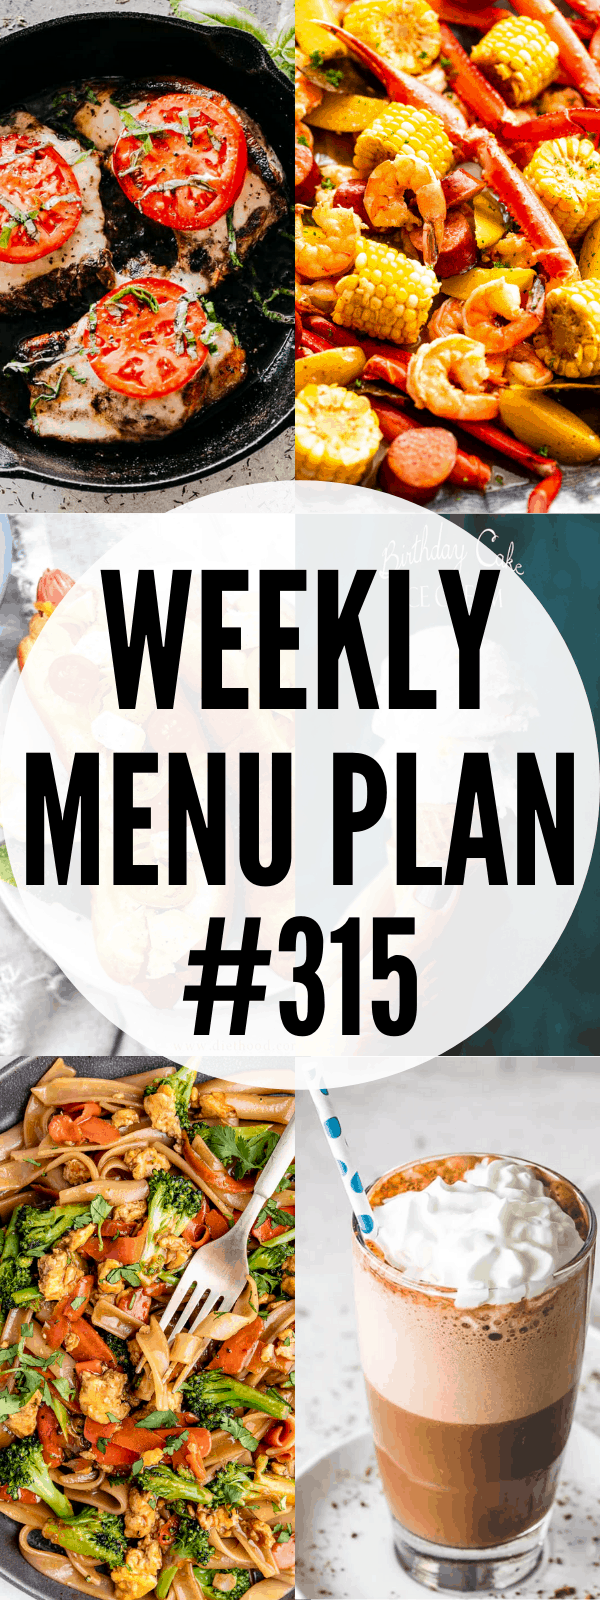 weekly menu plan 315 collage pin